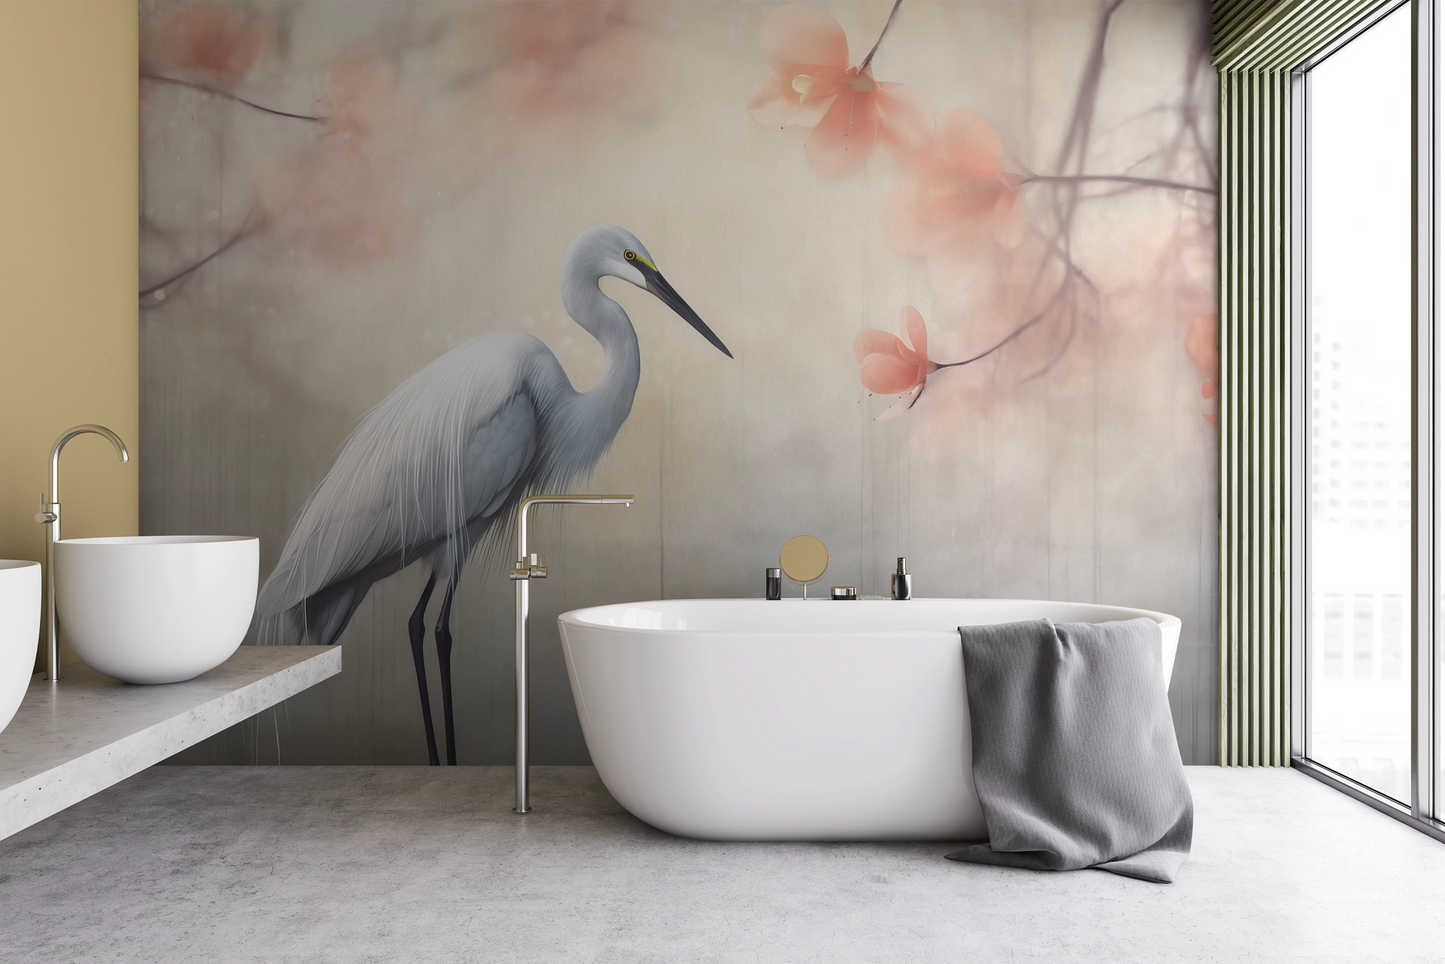 Fototapeta malowana o nazwie Heron Elegance pokazana w aranżacji wnętrza.